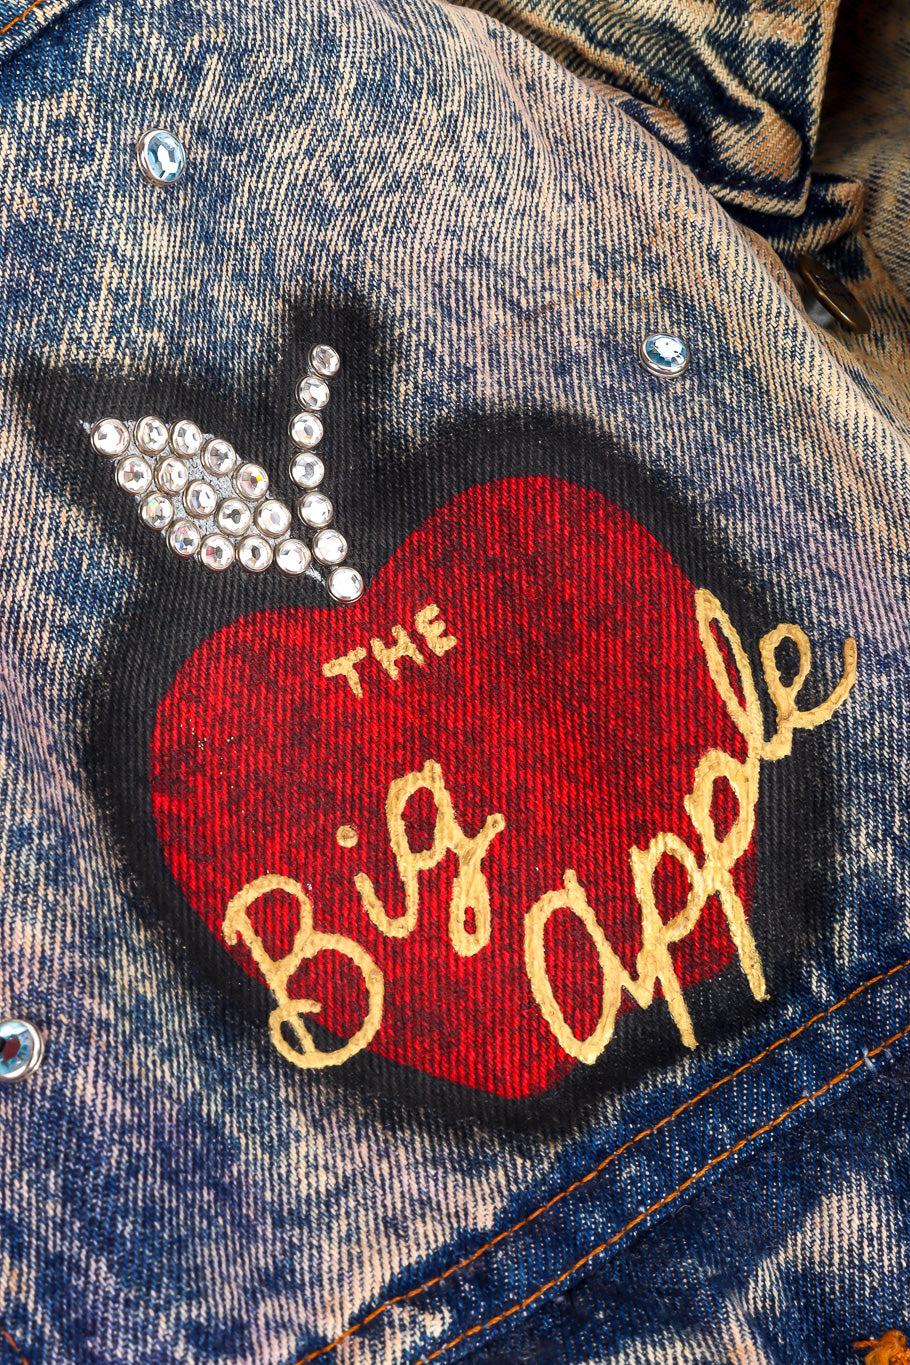 Vintage Tony Alamo The Big Apple Denim Jacket the big apple artwork closeup @Recessla